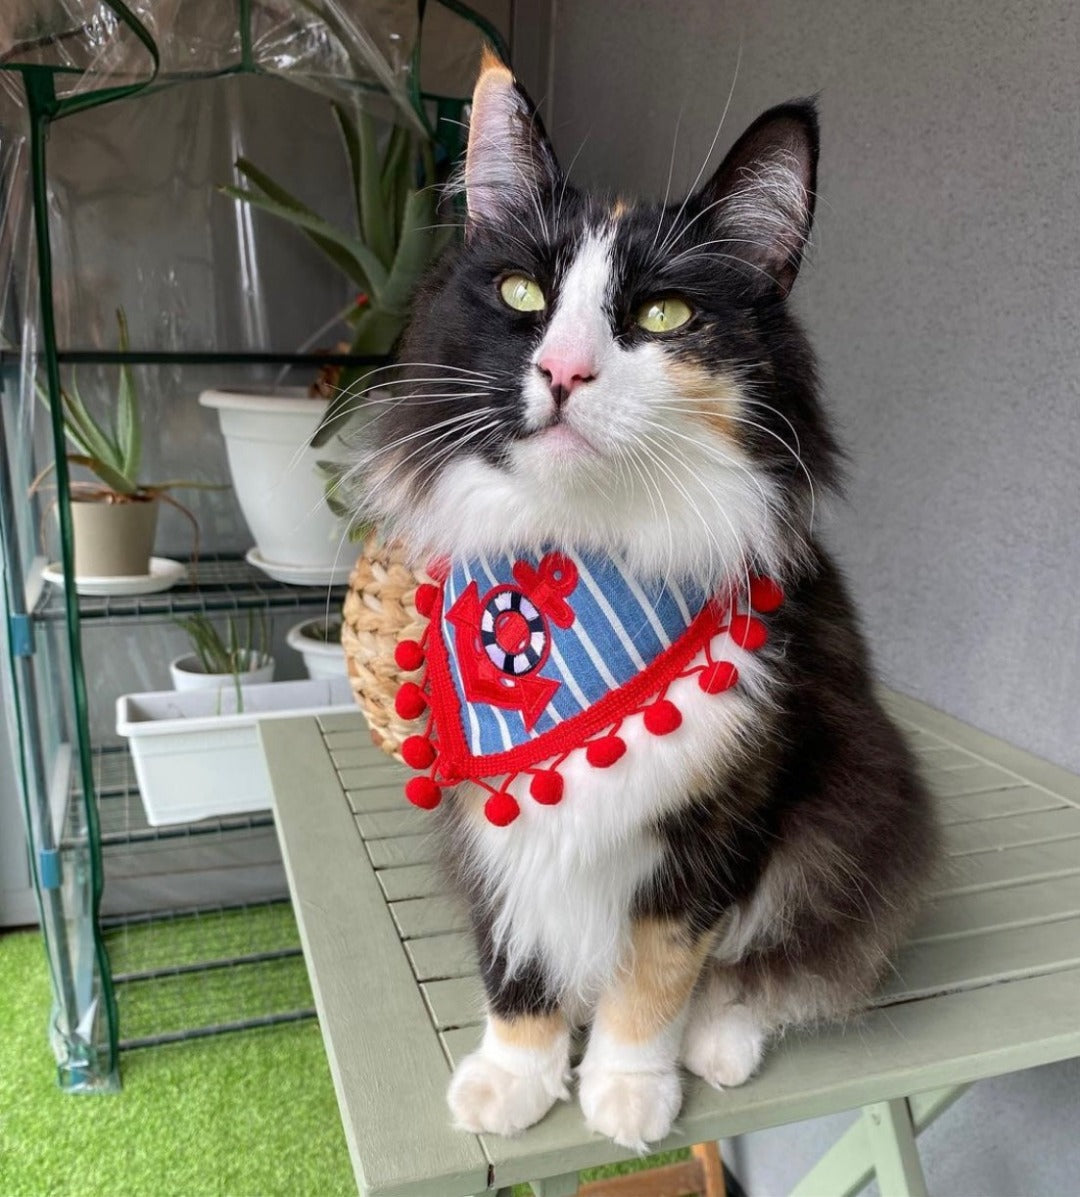 Flauschige Katze trägt gestreiftes Katzenhalstuch mit Anker und roter Bommelborte